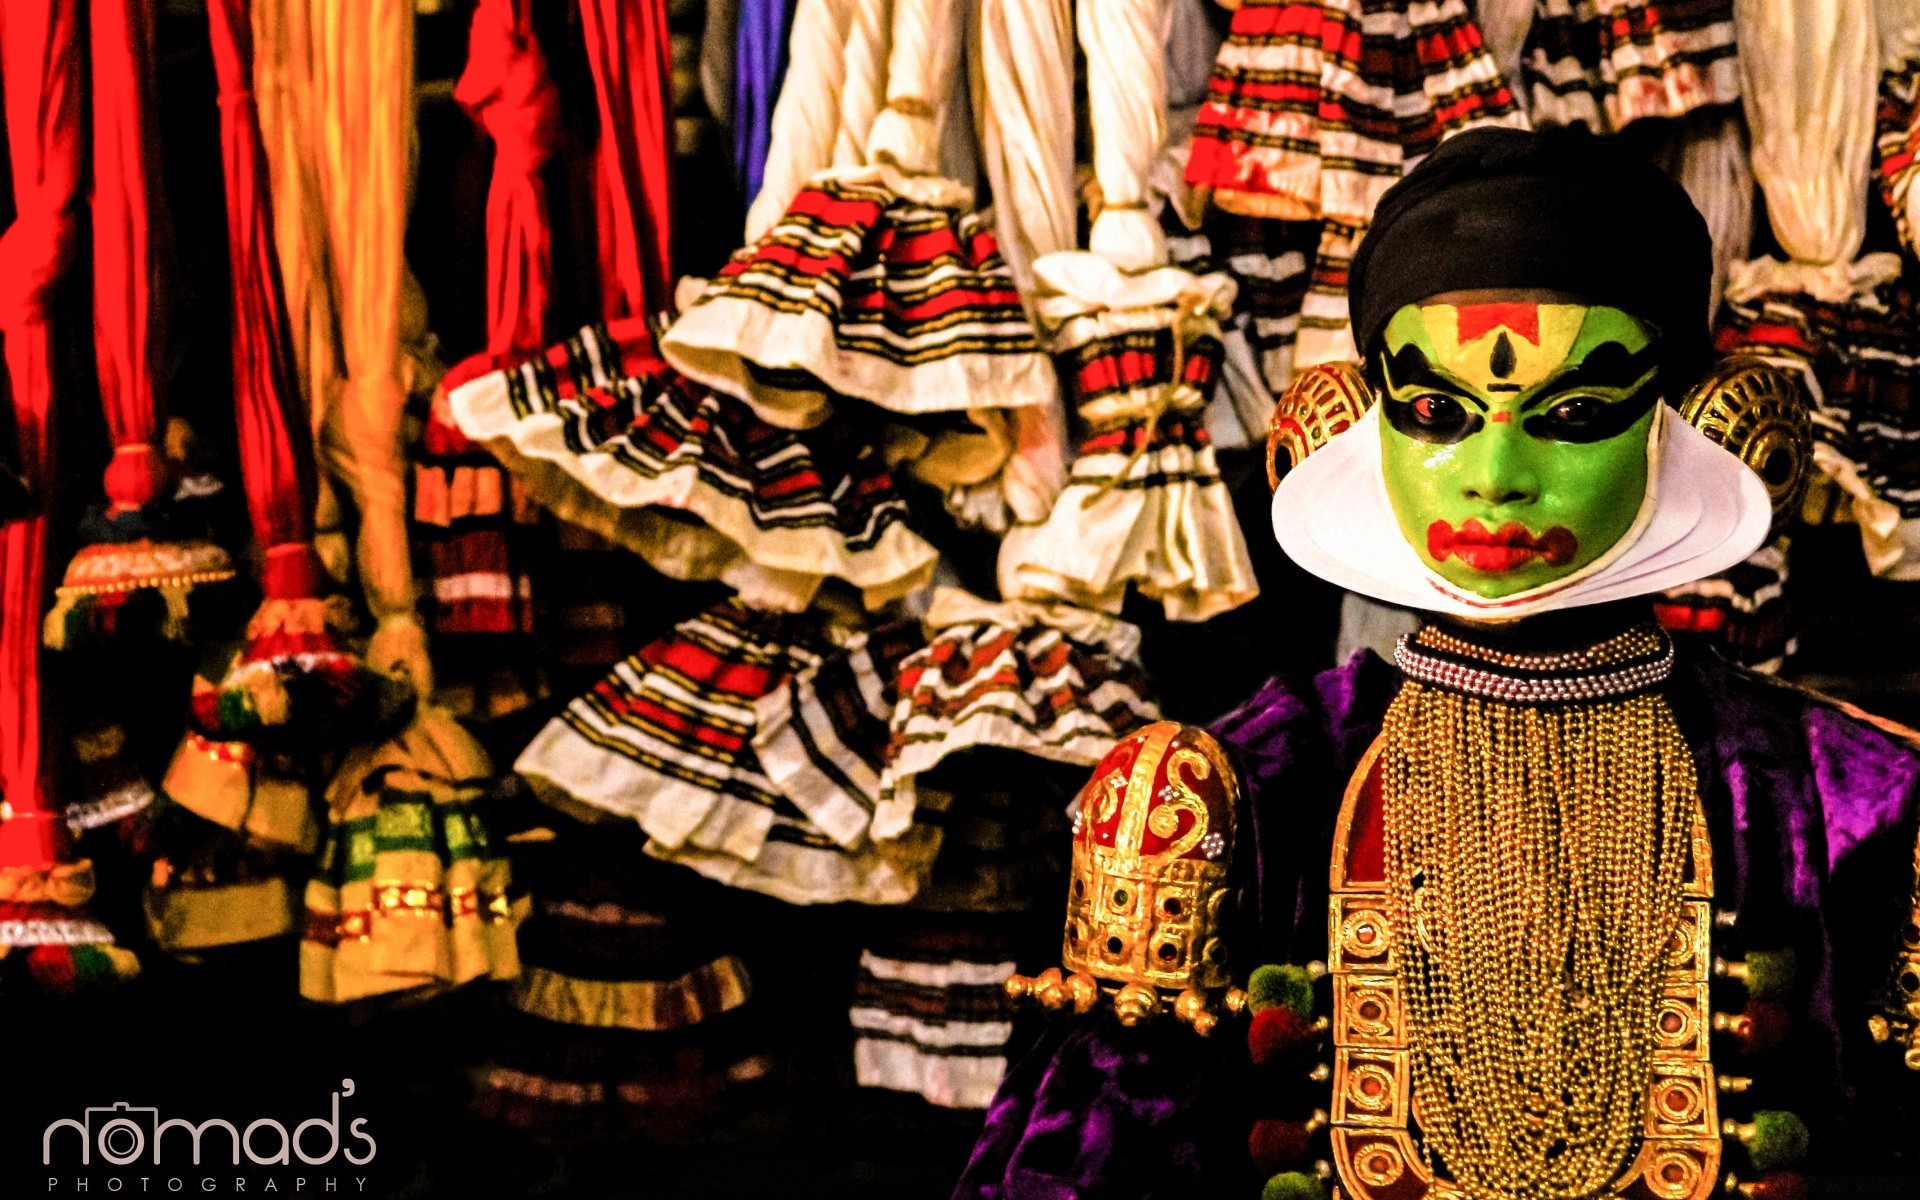 винтаж рынок акции сувенир носить продажа магазины висит продать базар магазин традиционные женщина коренные костюм платье